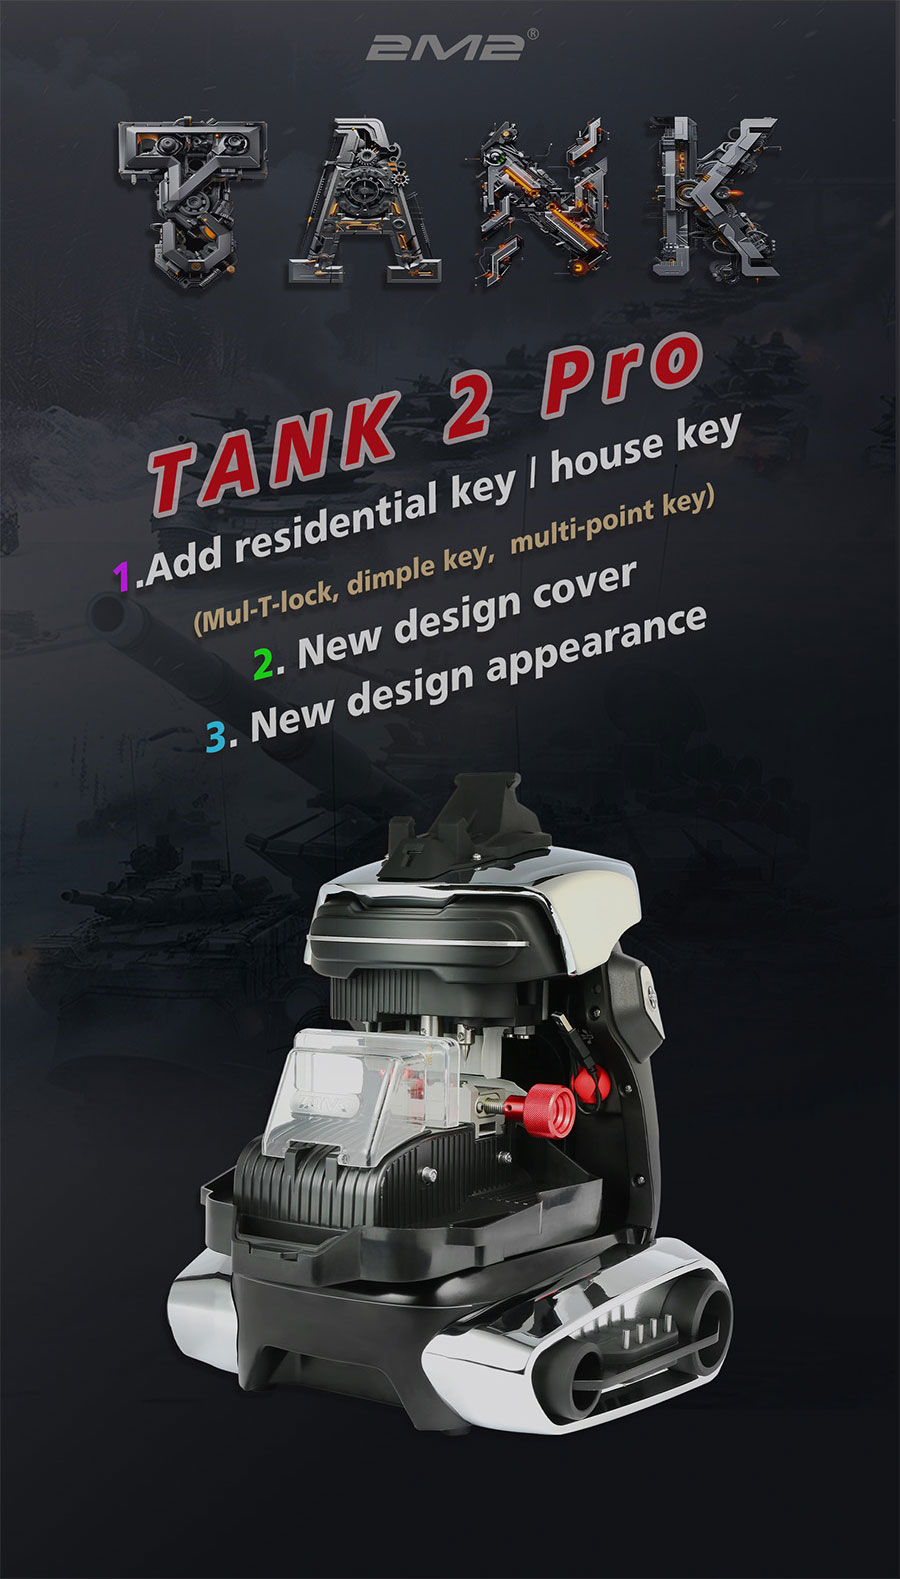 2m2-tank-2-pro-cnc-key-cutting-machine